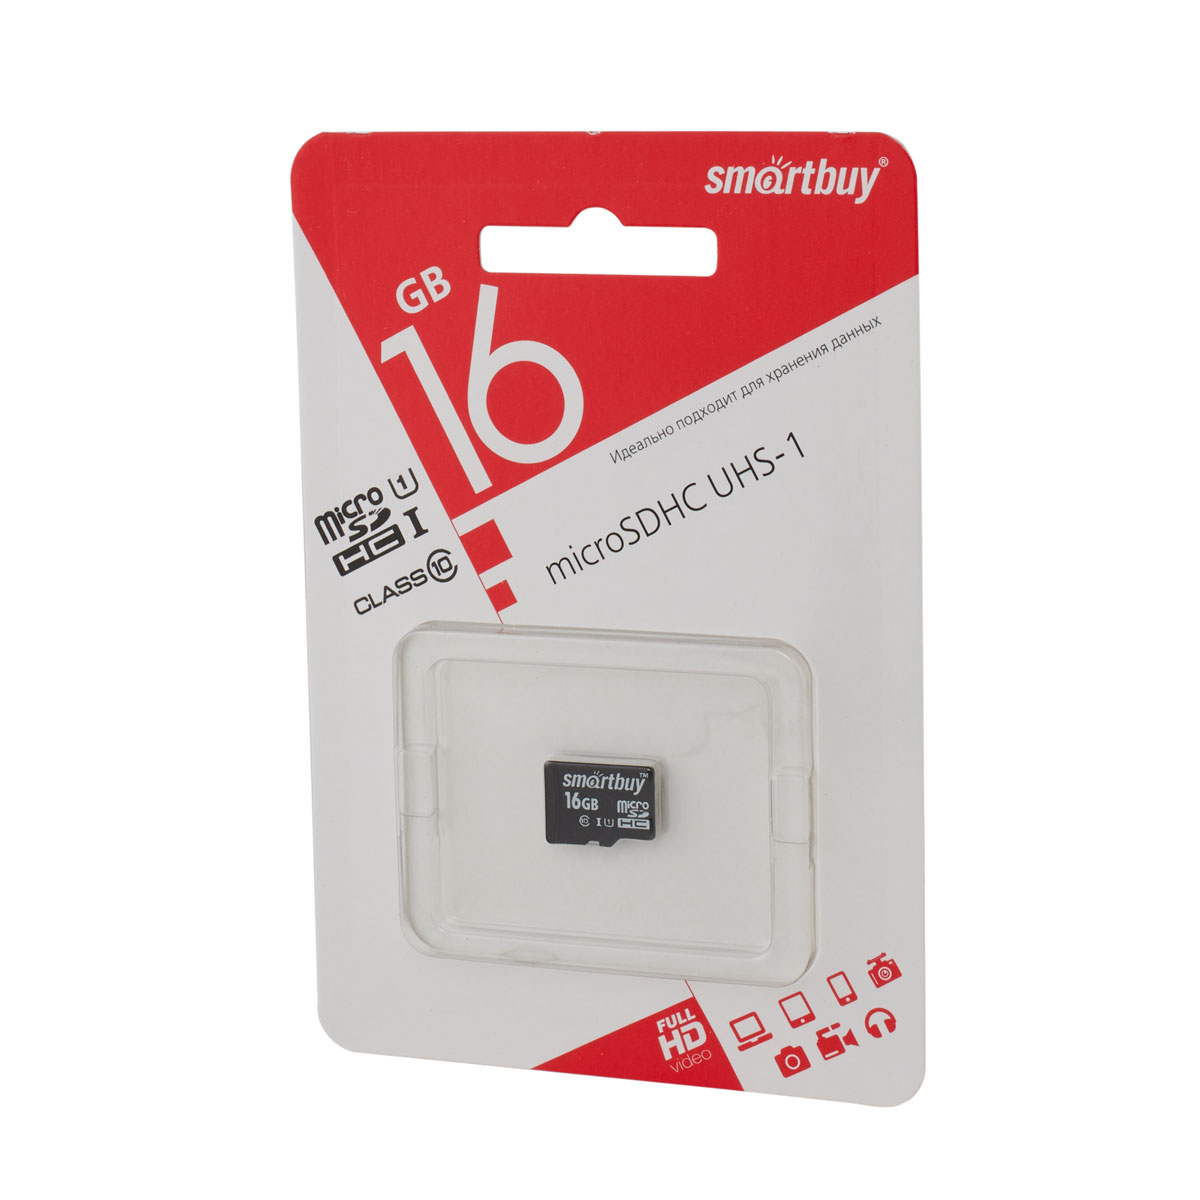 Micro SD 16GB Сlass 10 Smart buy UHS-I (без адаптеров)